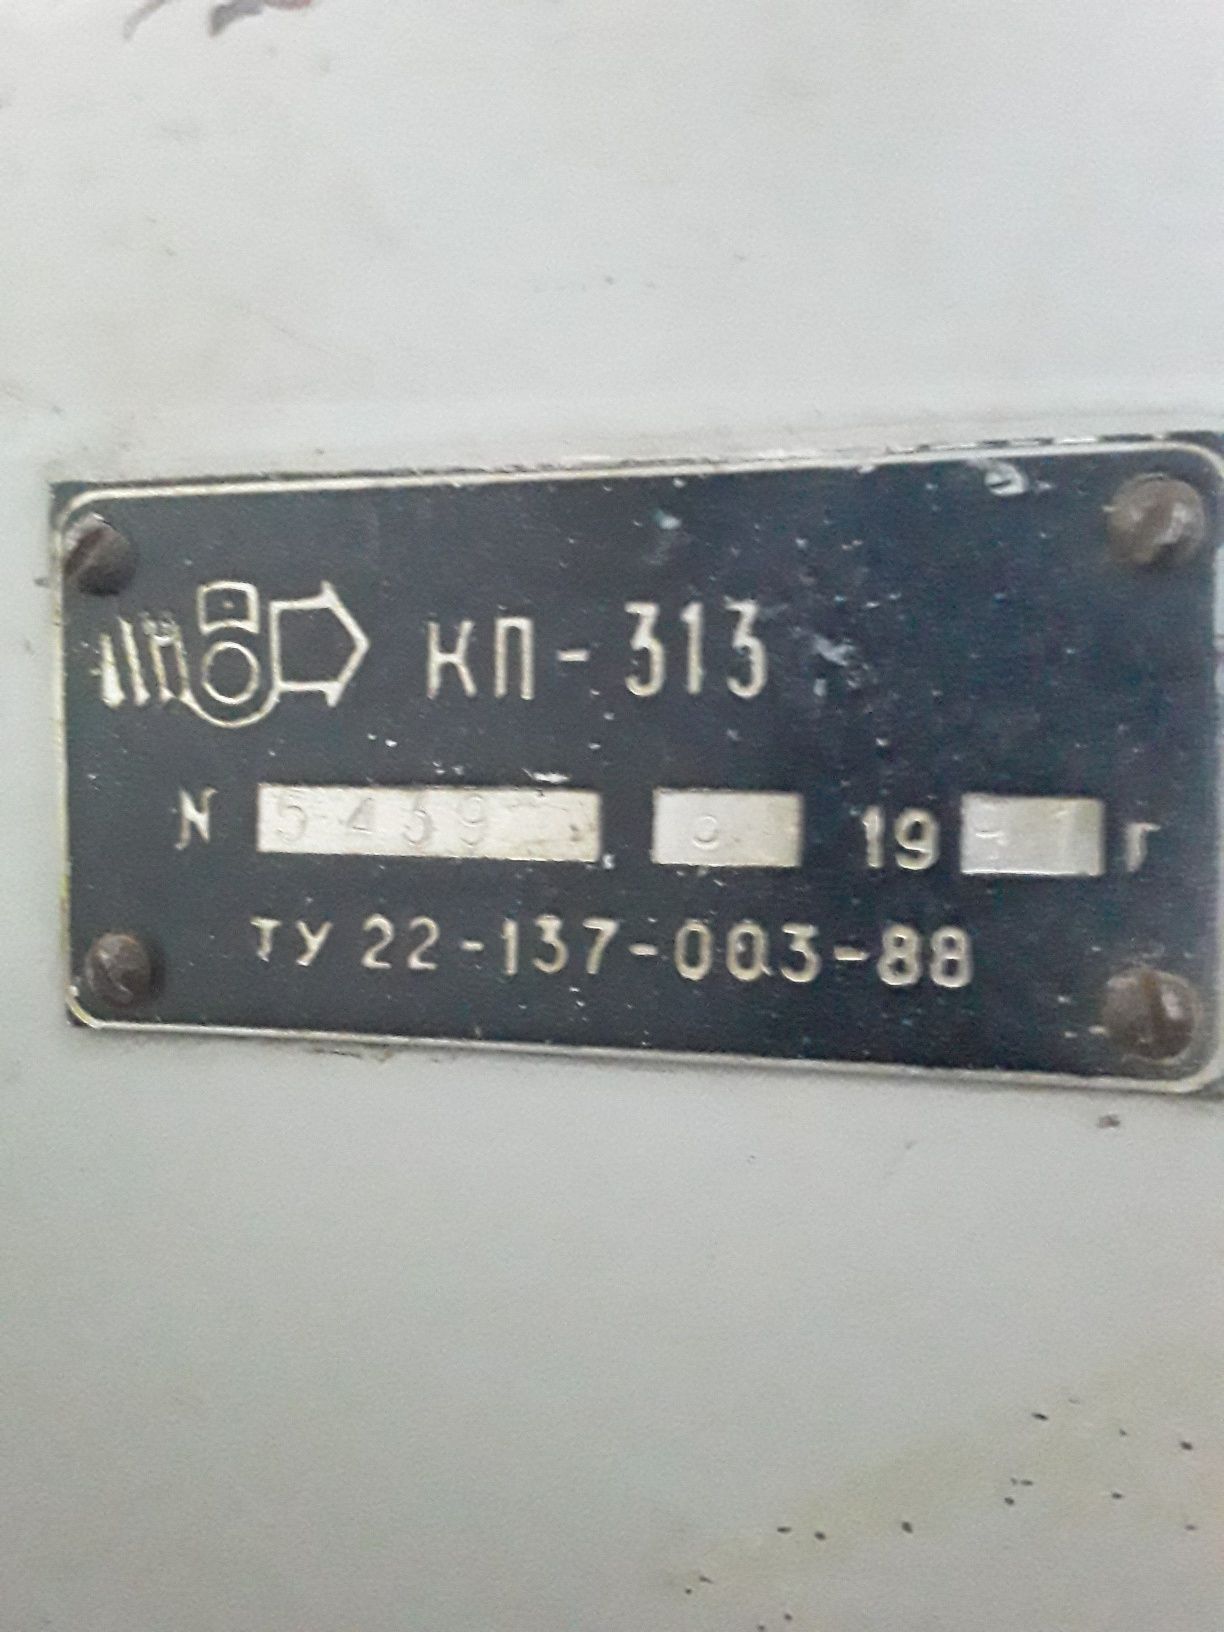 Продам сушилку КП -313